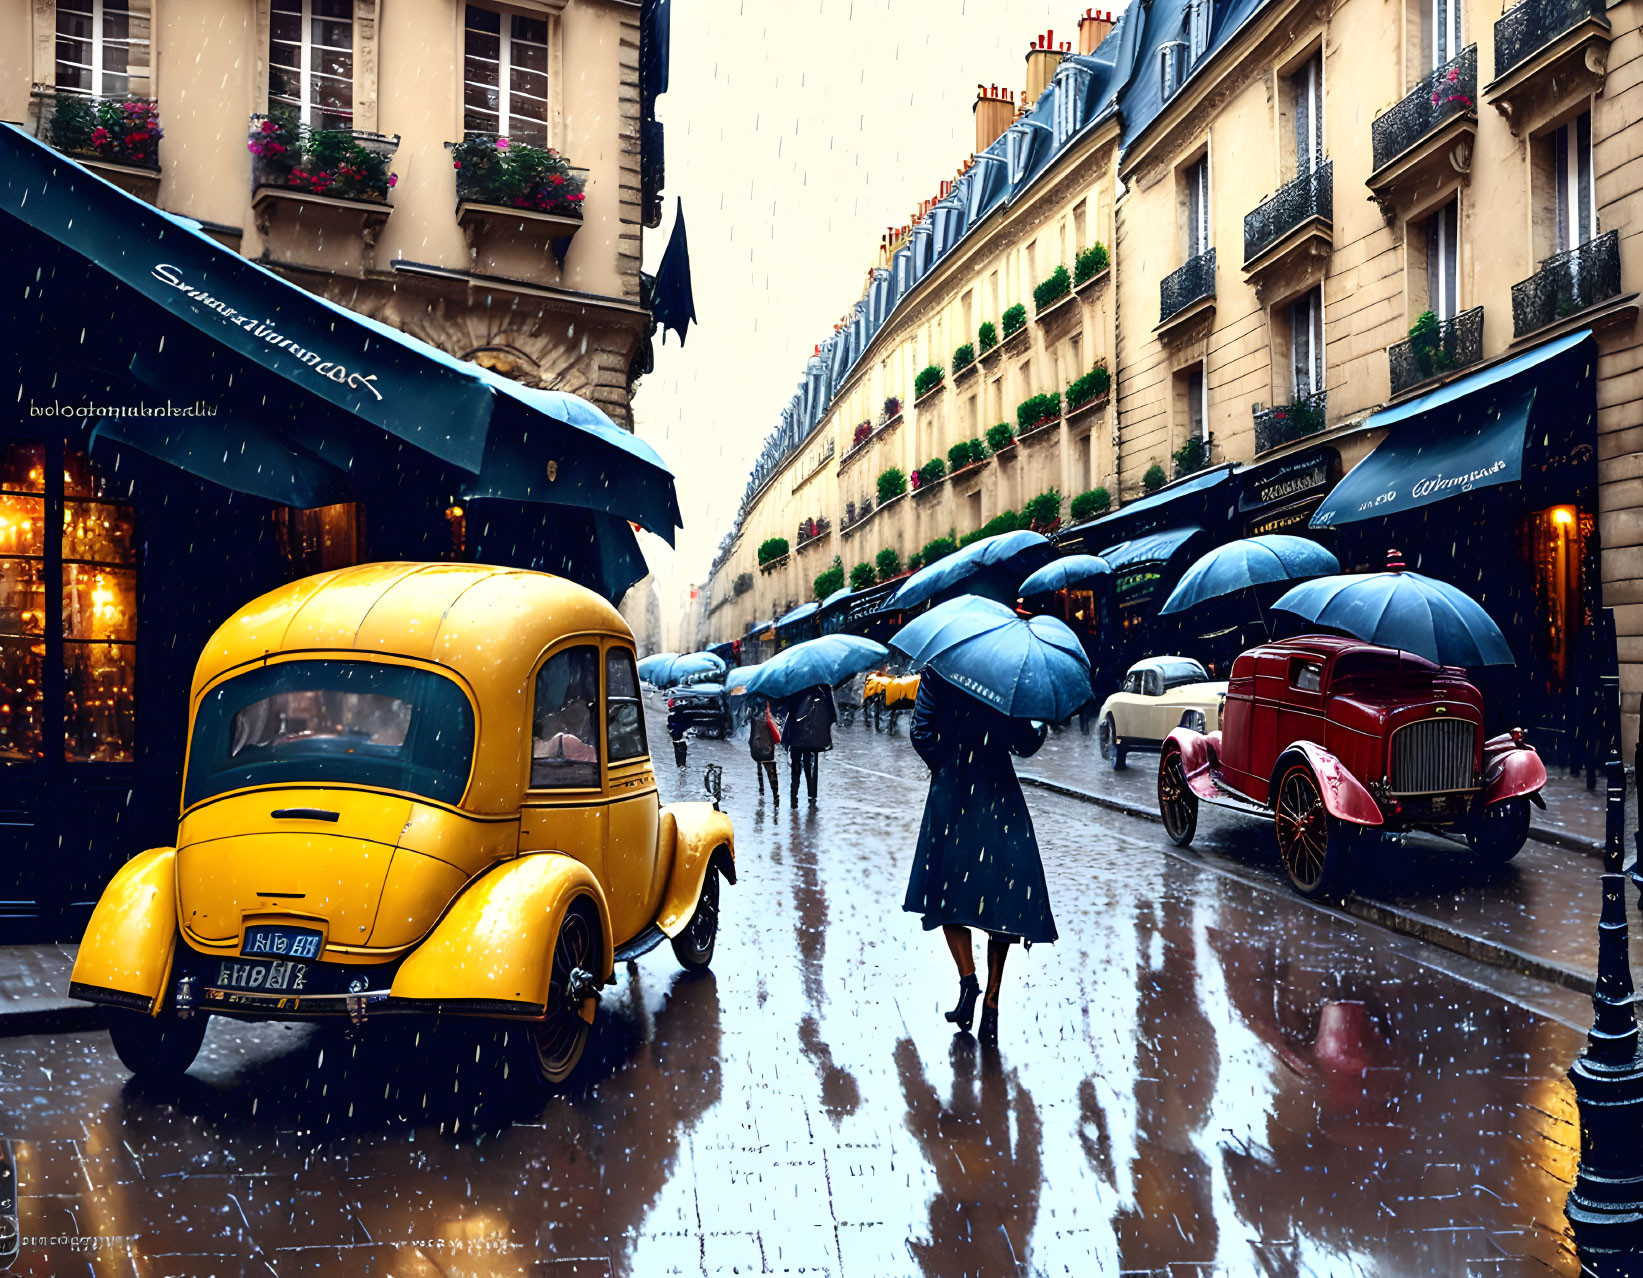 Raining in Paris